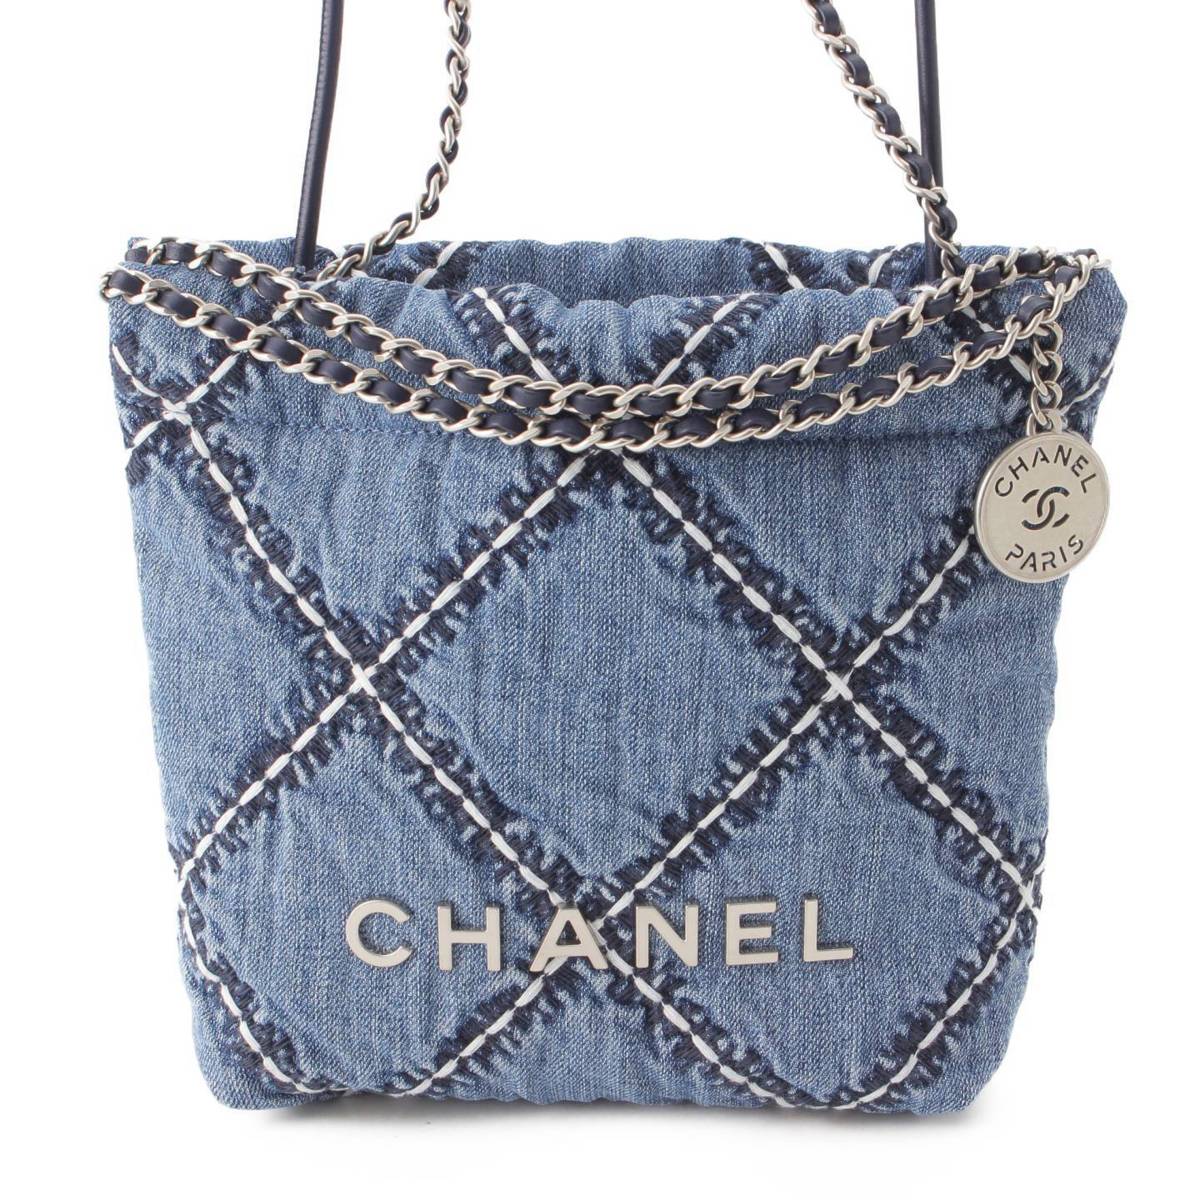 シャネル(Chanel) マトラッセ 2WAY スモールショッピングバッグ AS0355 